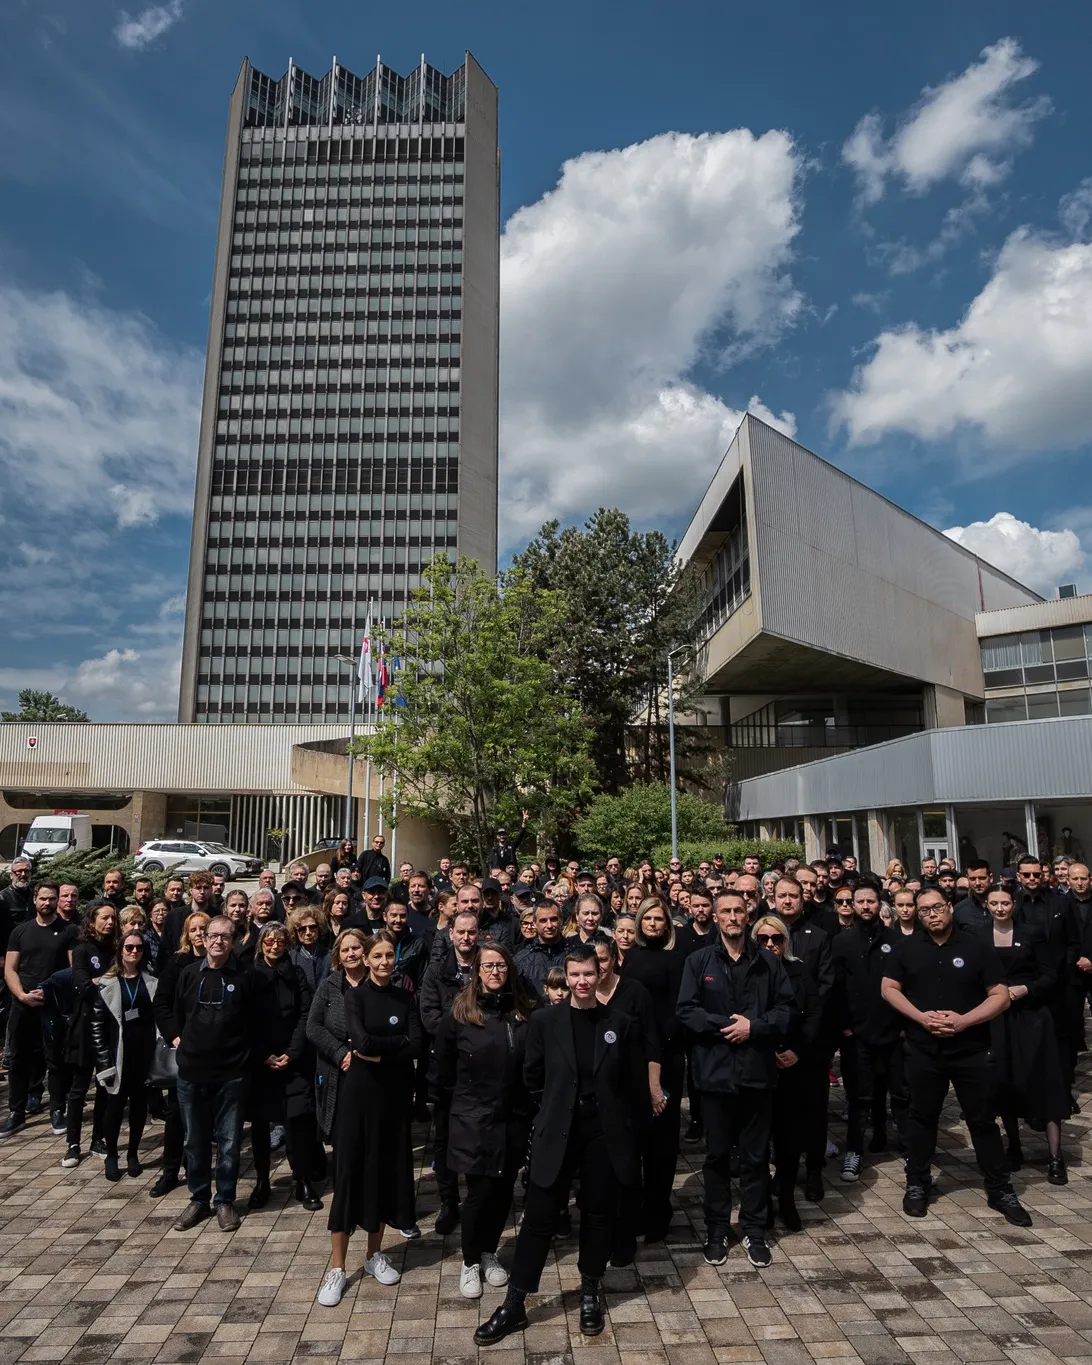 Slovenští veřejnoprávní novináři protestovali v černém